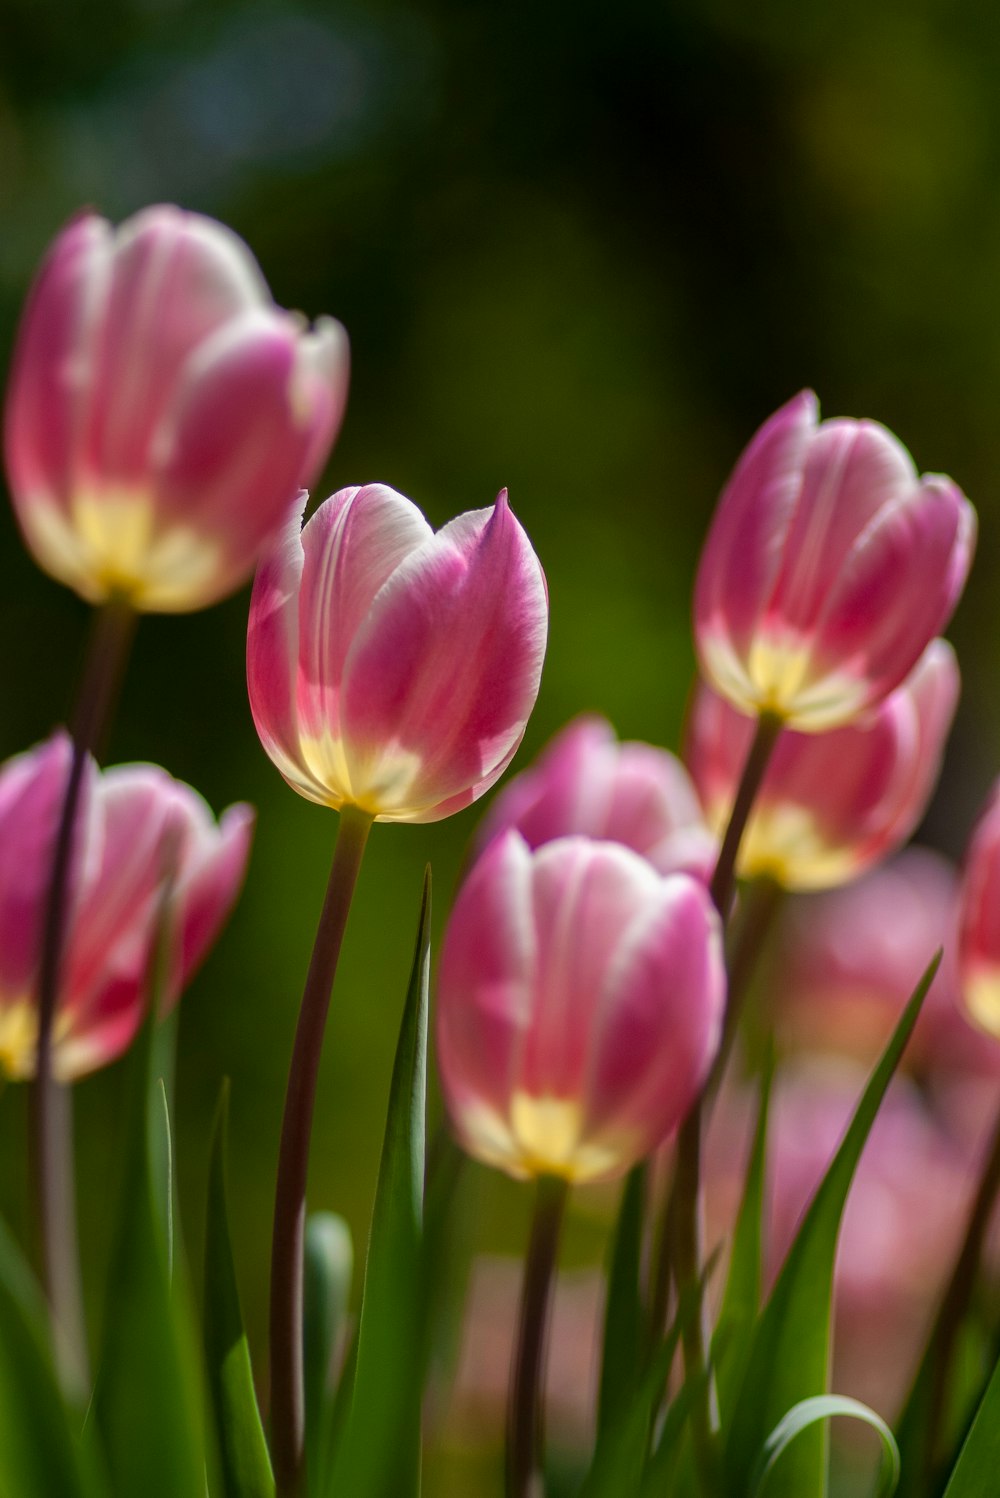 Photographie de tulipes violettes à mise au point peu profonde